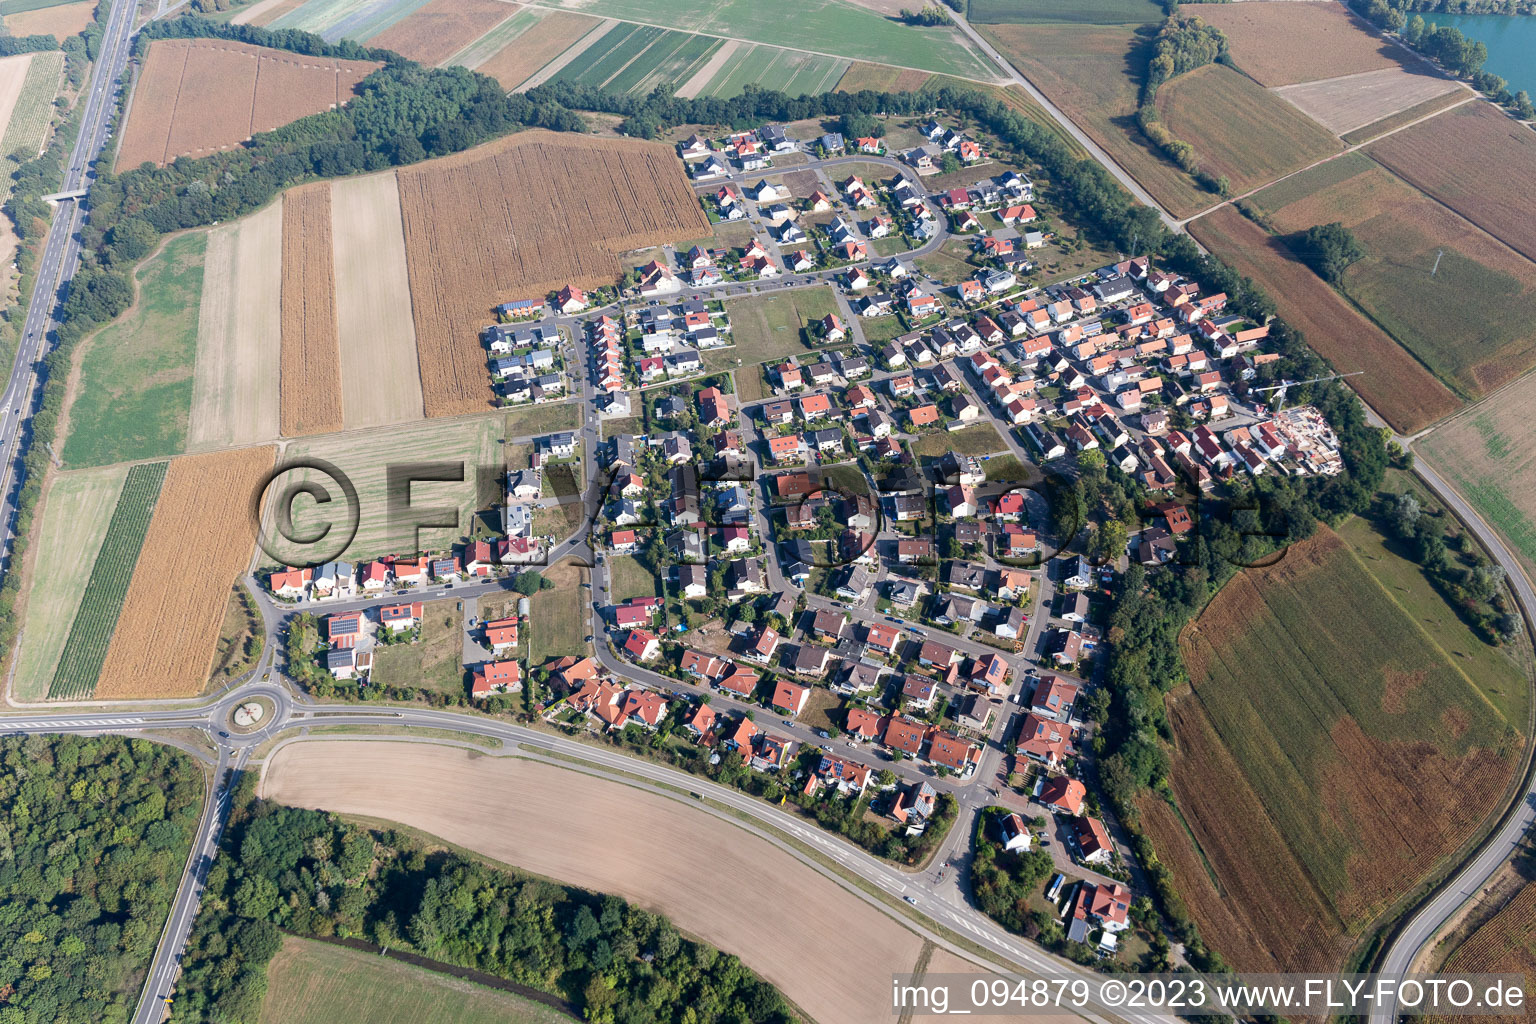 Hardtwald im Bundesland Rheinland-Pfalz, Deutschland von oben gesehen